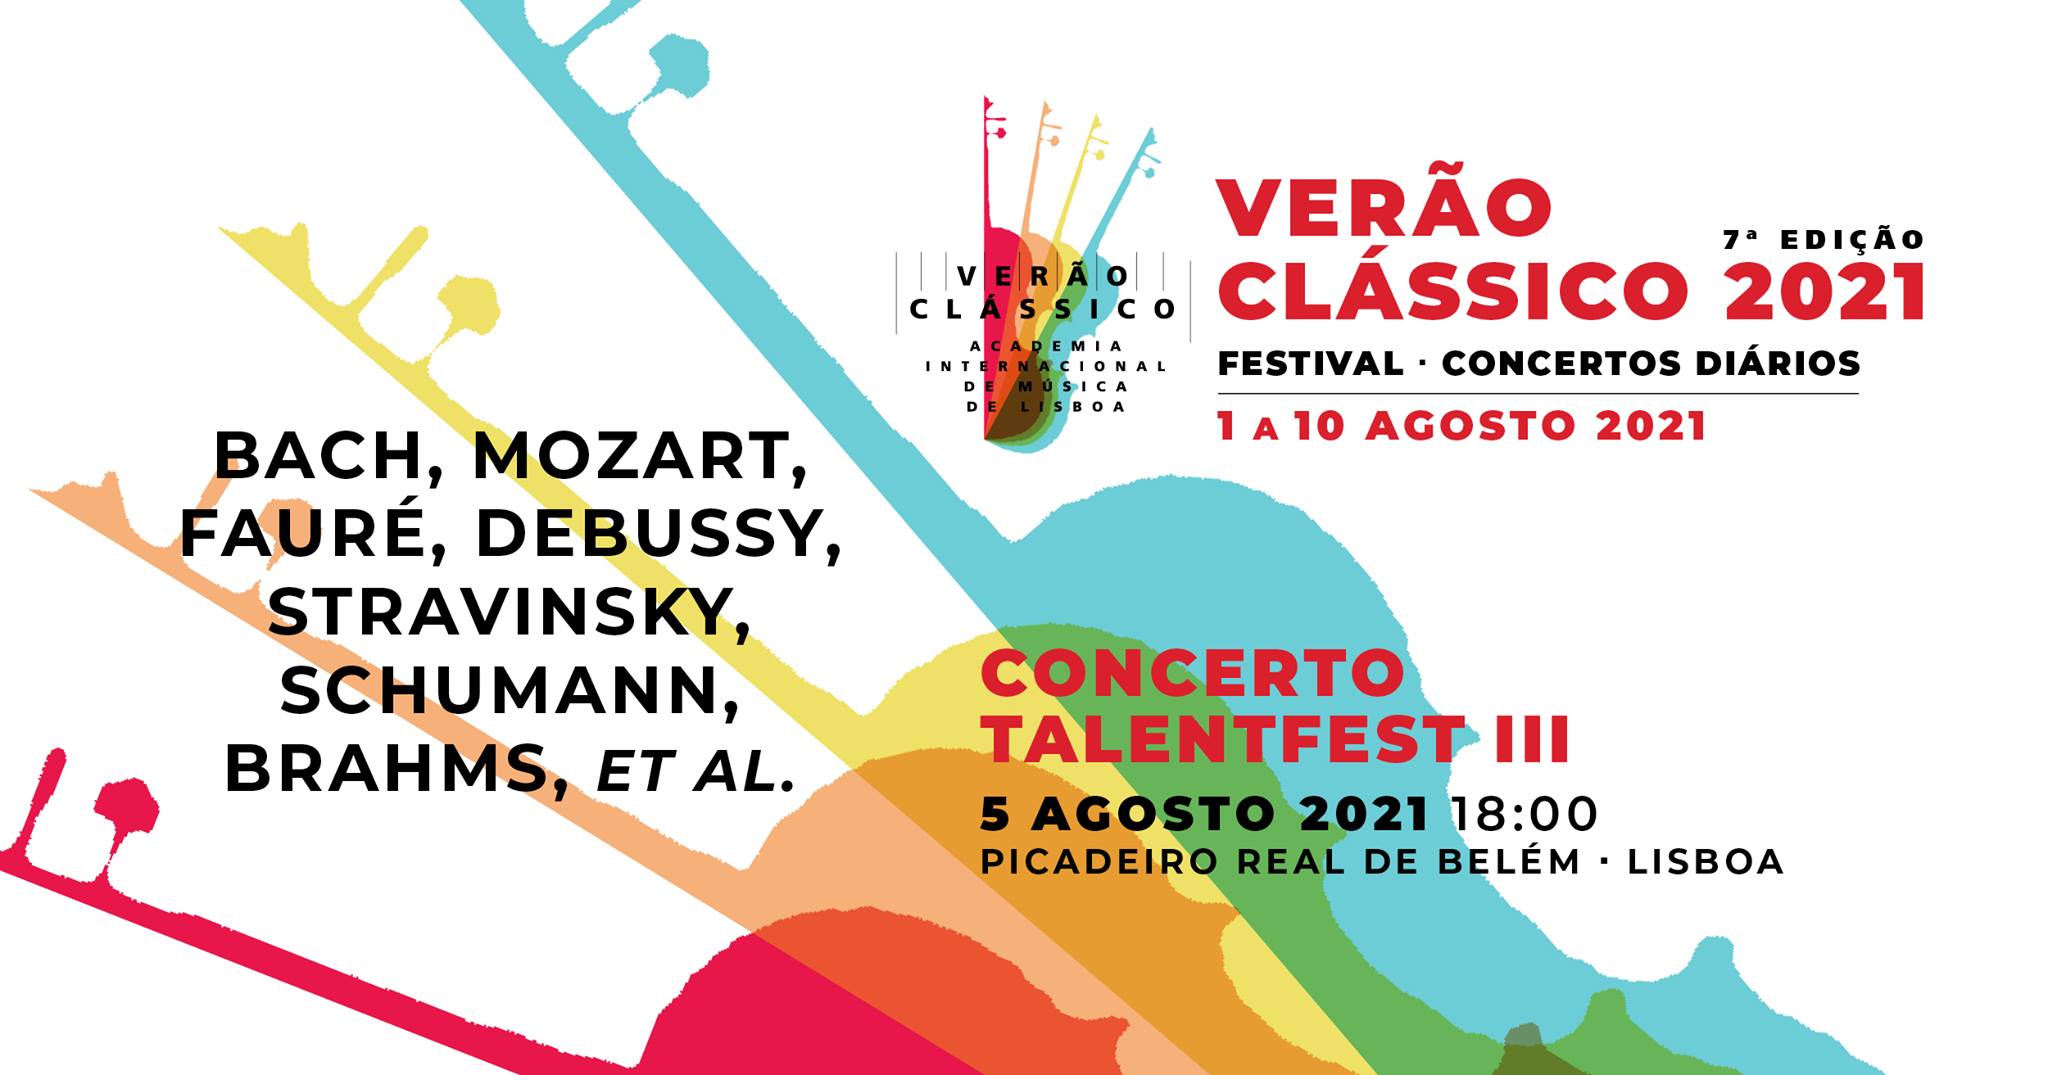 Concerto TalentFest III - VERÃO CLÁSSICO 2021